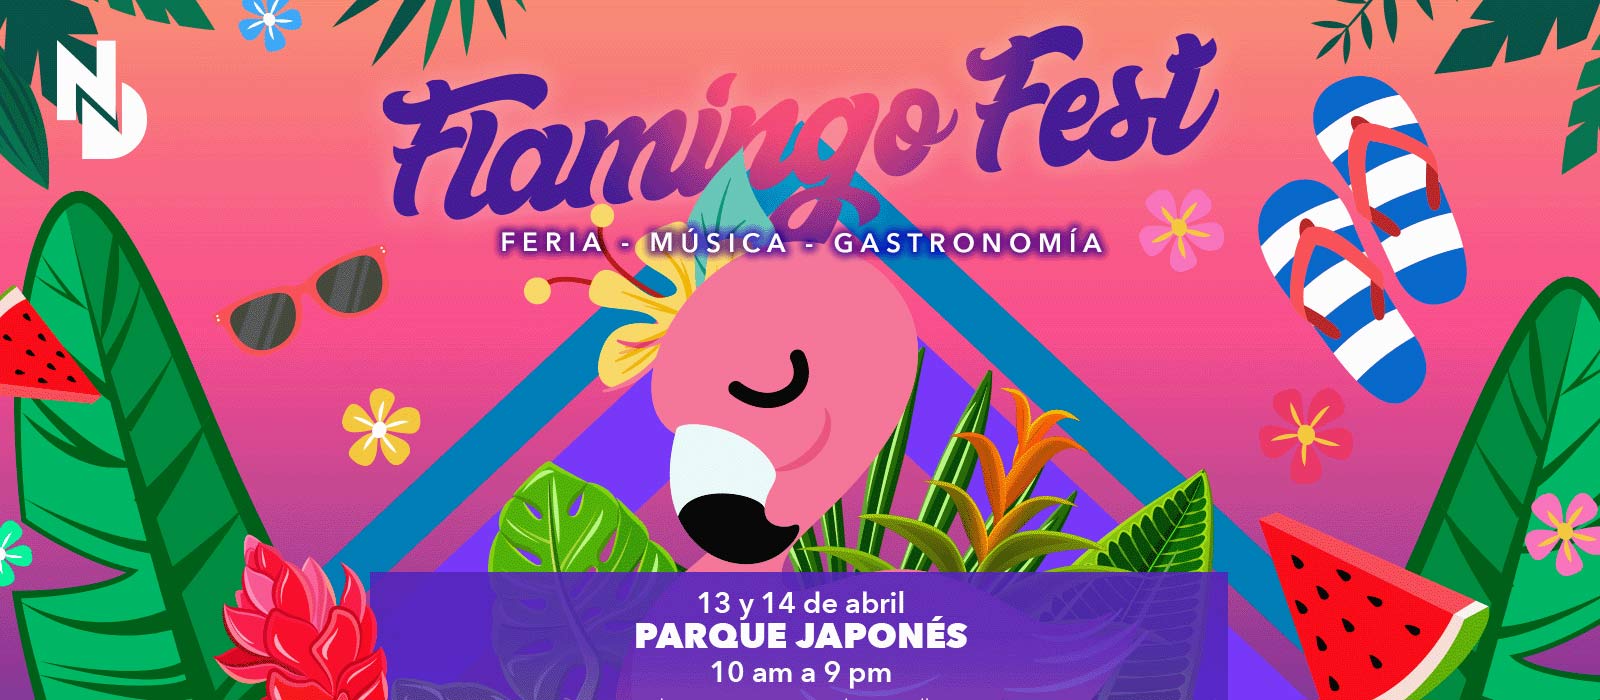 ¡ Se viene el “Flamingo Fest ND” para celebrar el verano! Nicaragua